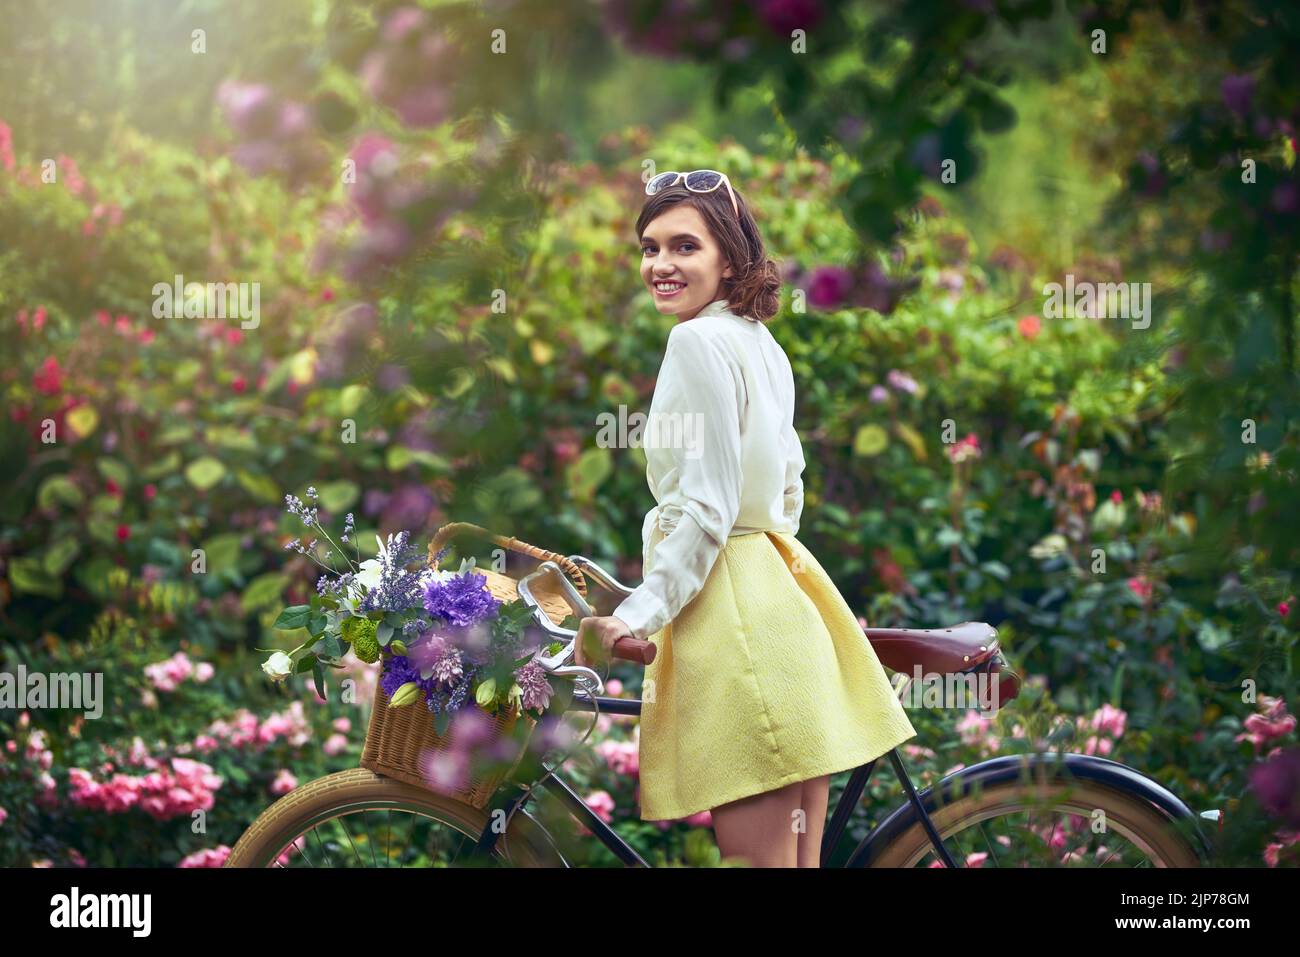 Su belleza brilla más que el pintoresco paisaje. Retrato de una joven atractiva en bicicleta al aire libre. Foto de stock